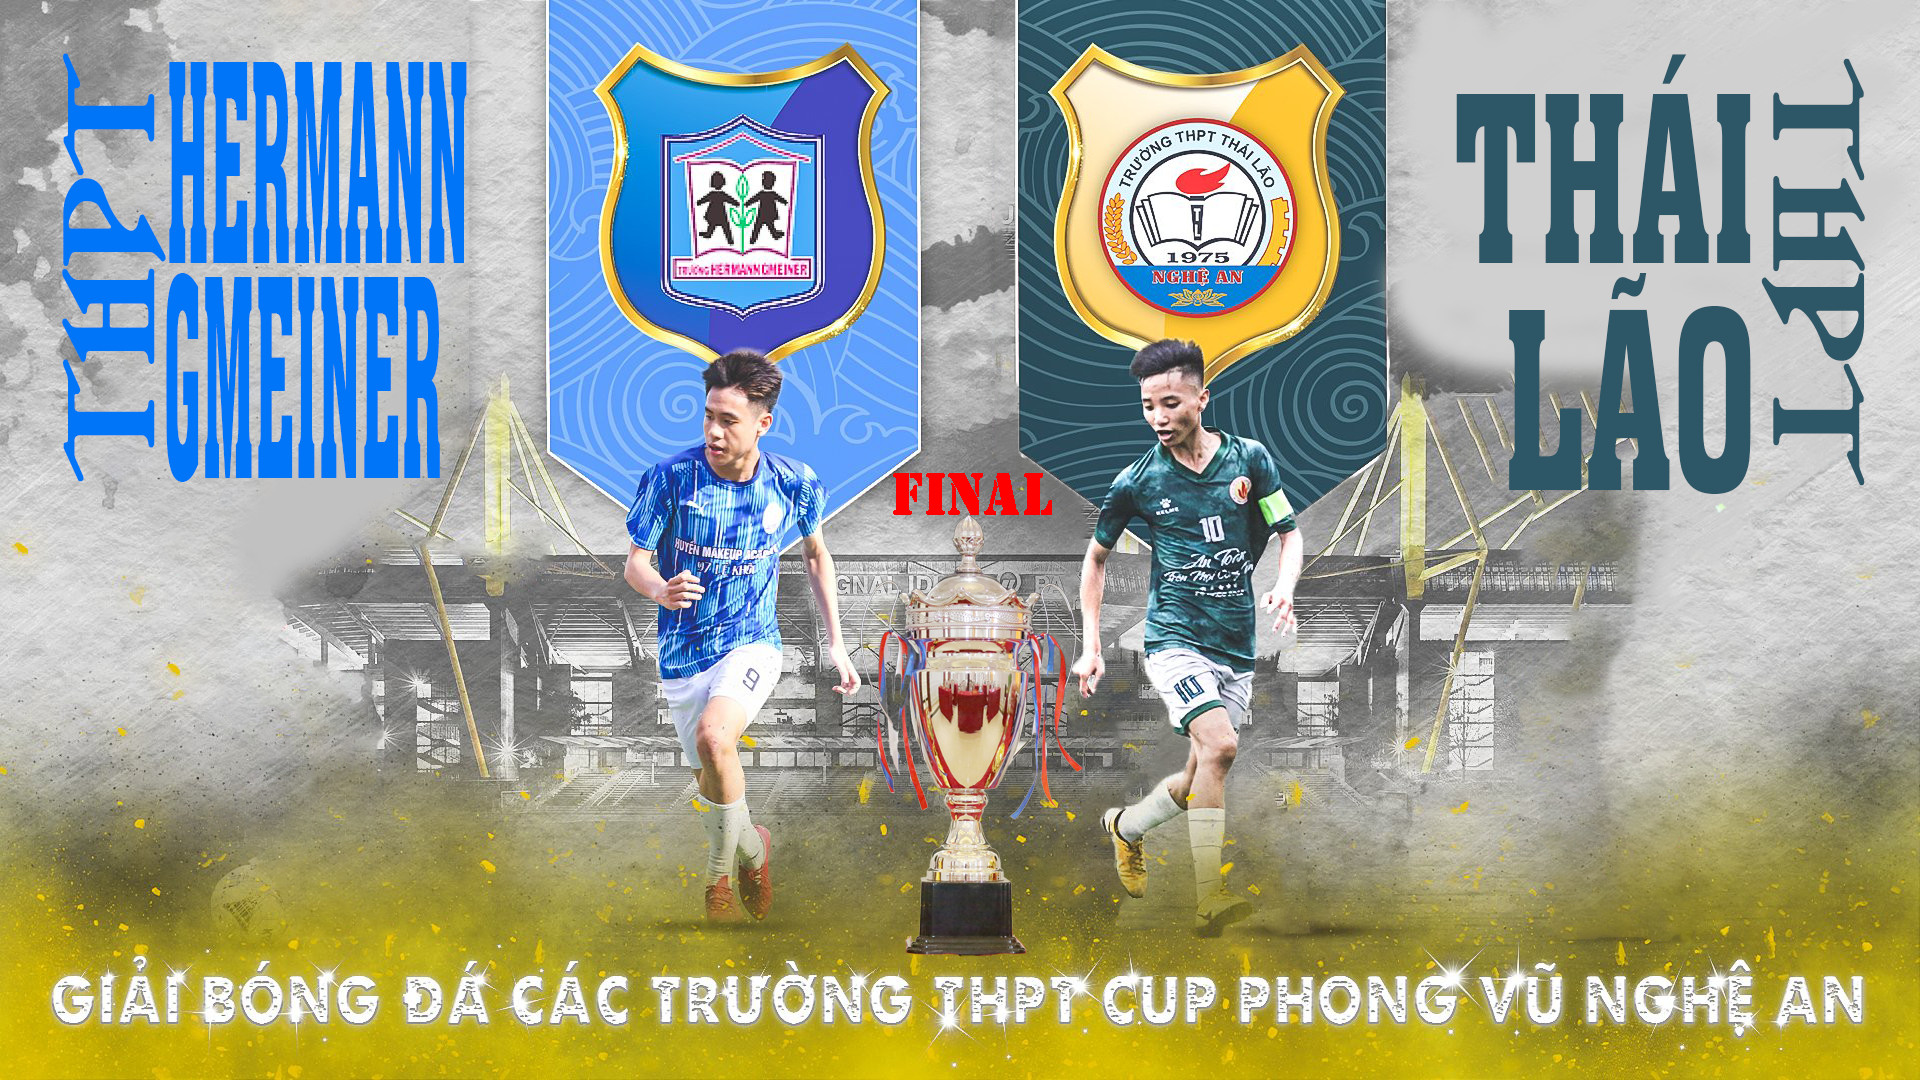 Chung kết giải bóng đá các trường THPT tỉnh Nghệ An lần thứ 5